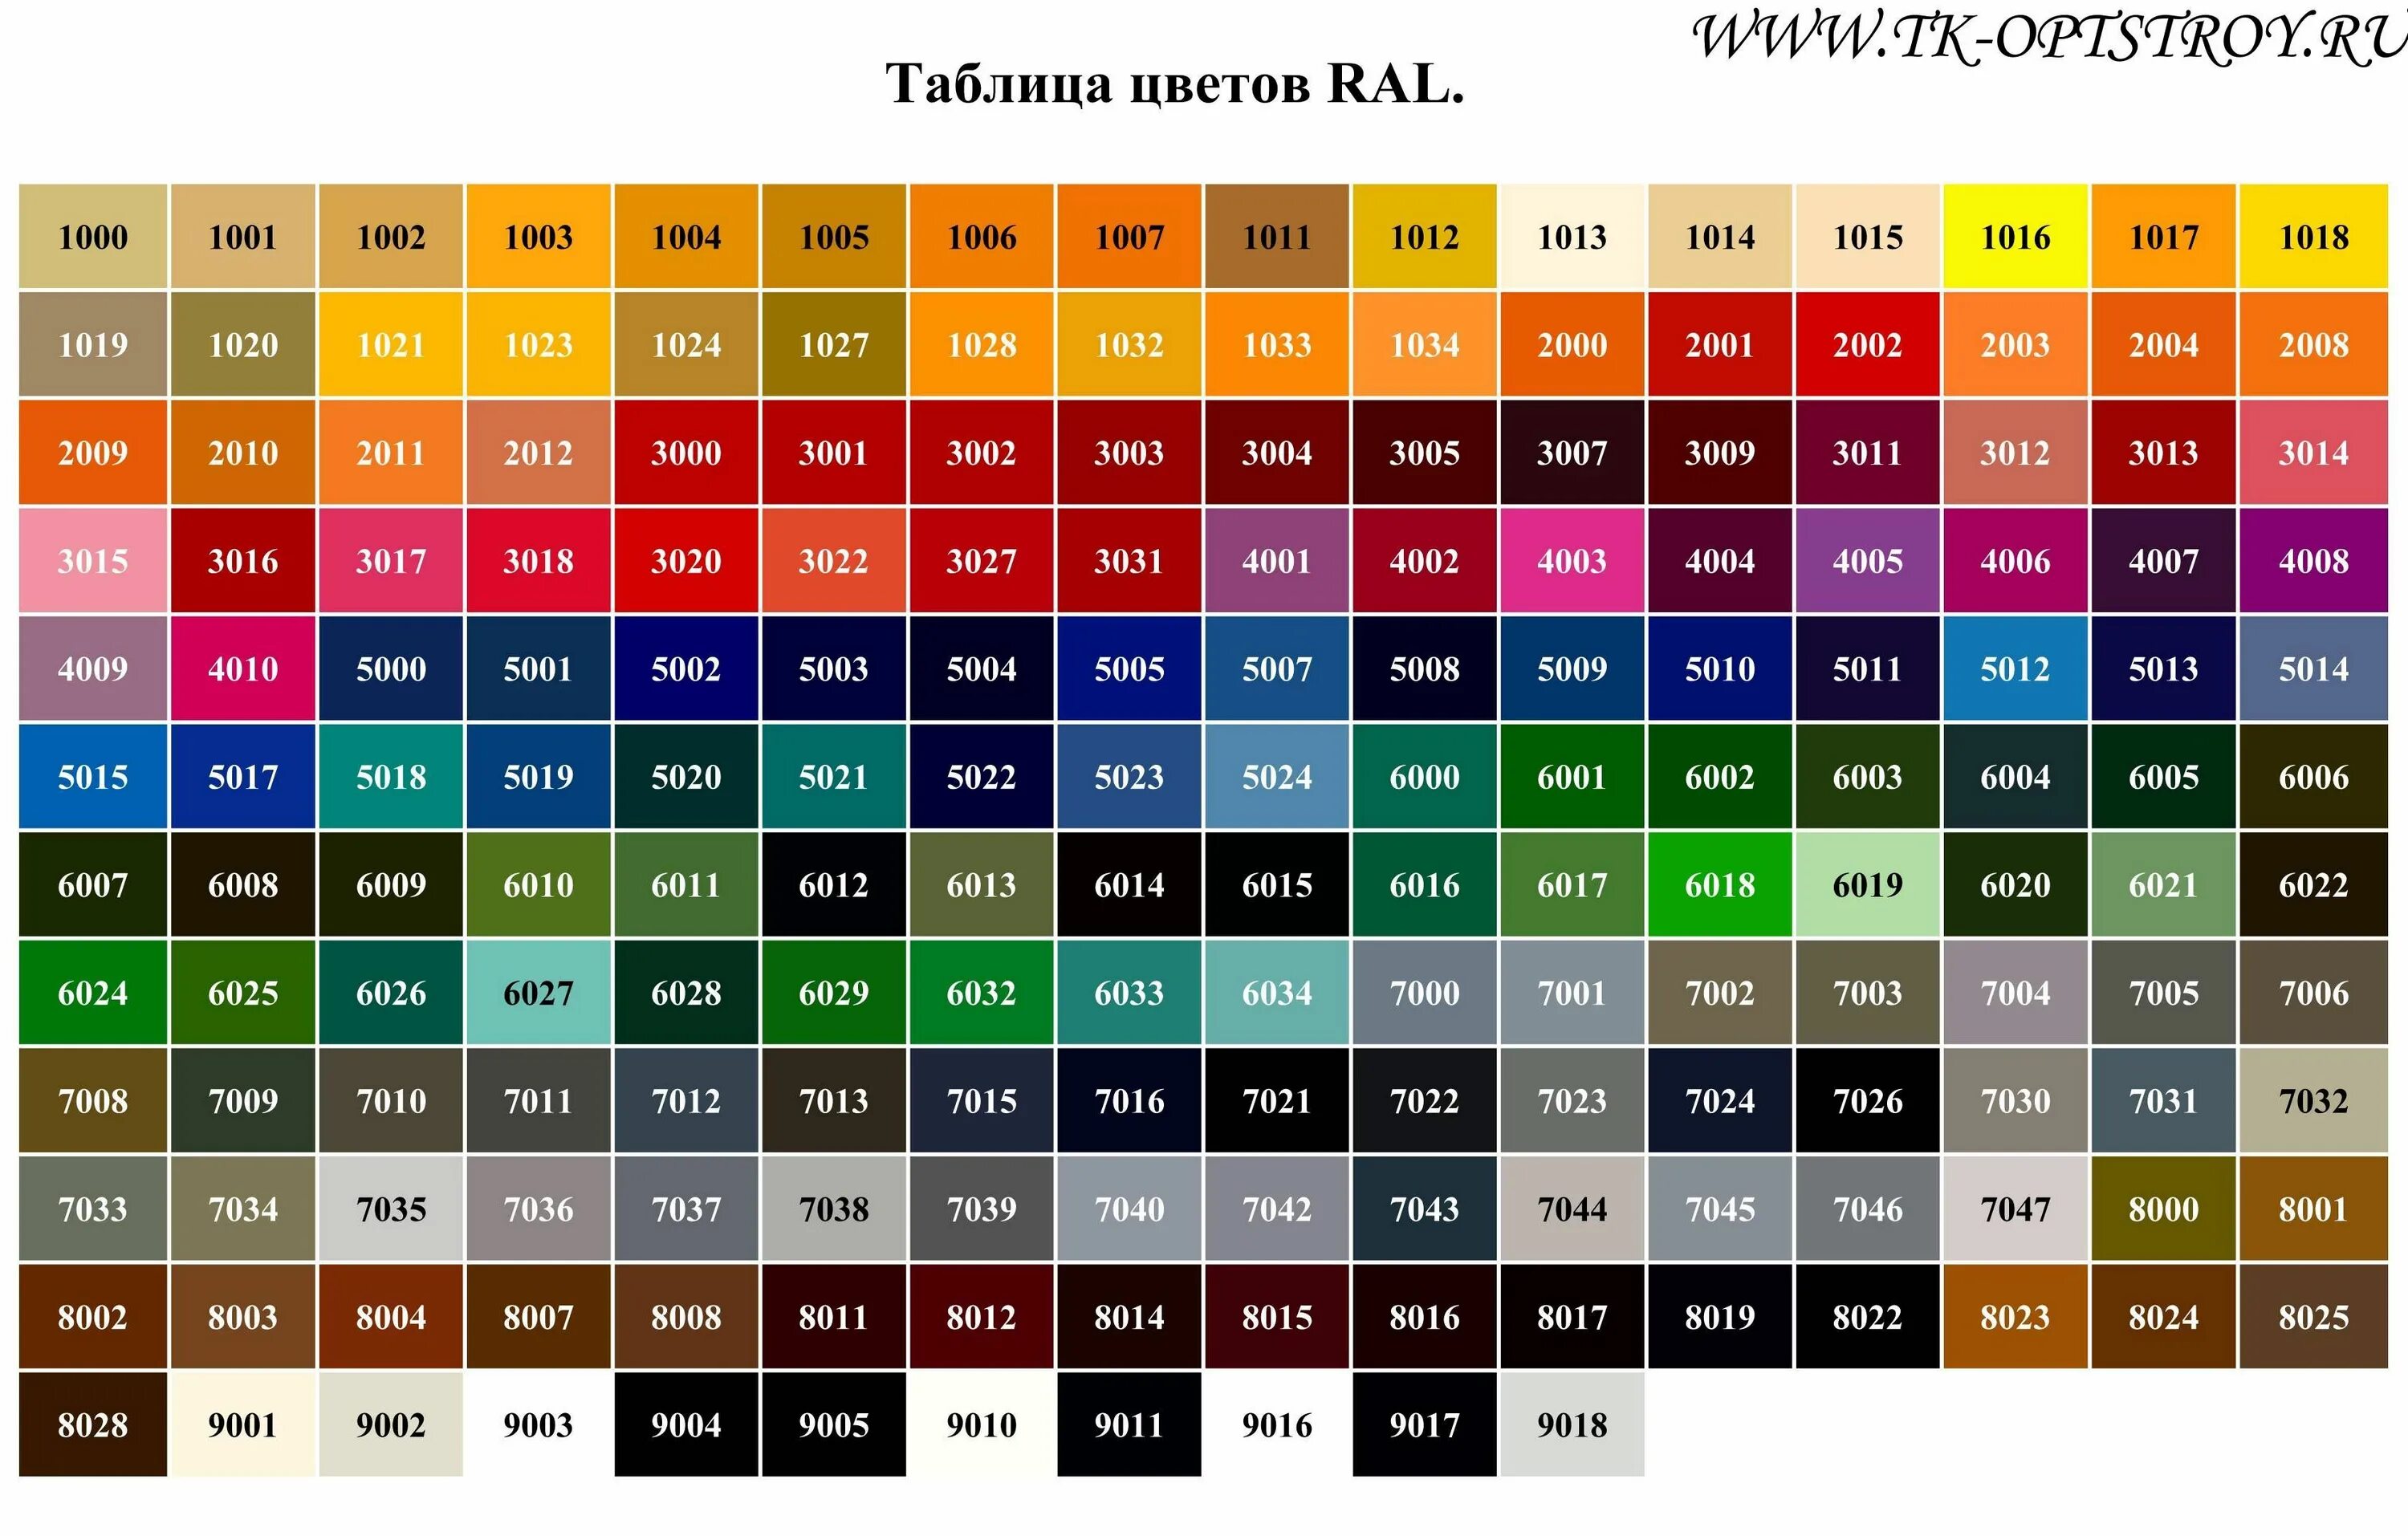 Рал 9016 порошковая краска. Краска RAL 7047. Ral9003 таблица цветов. Таблица цветов RAL Classic k7.